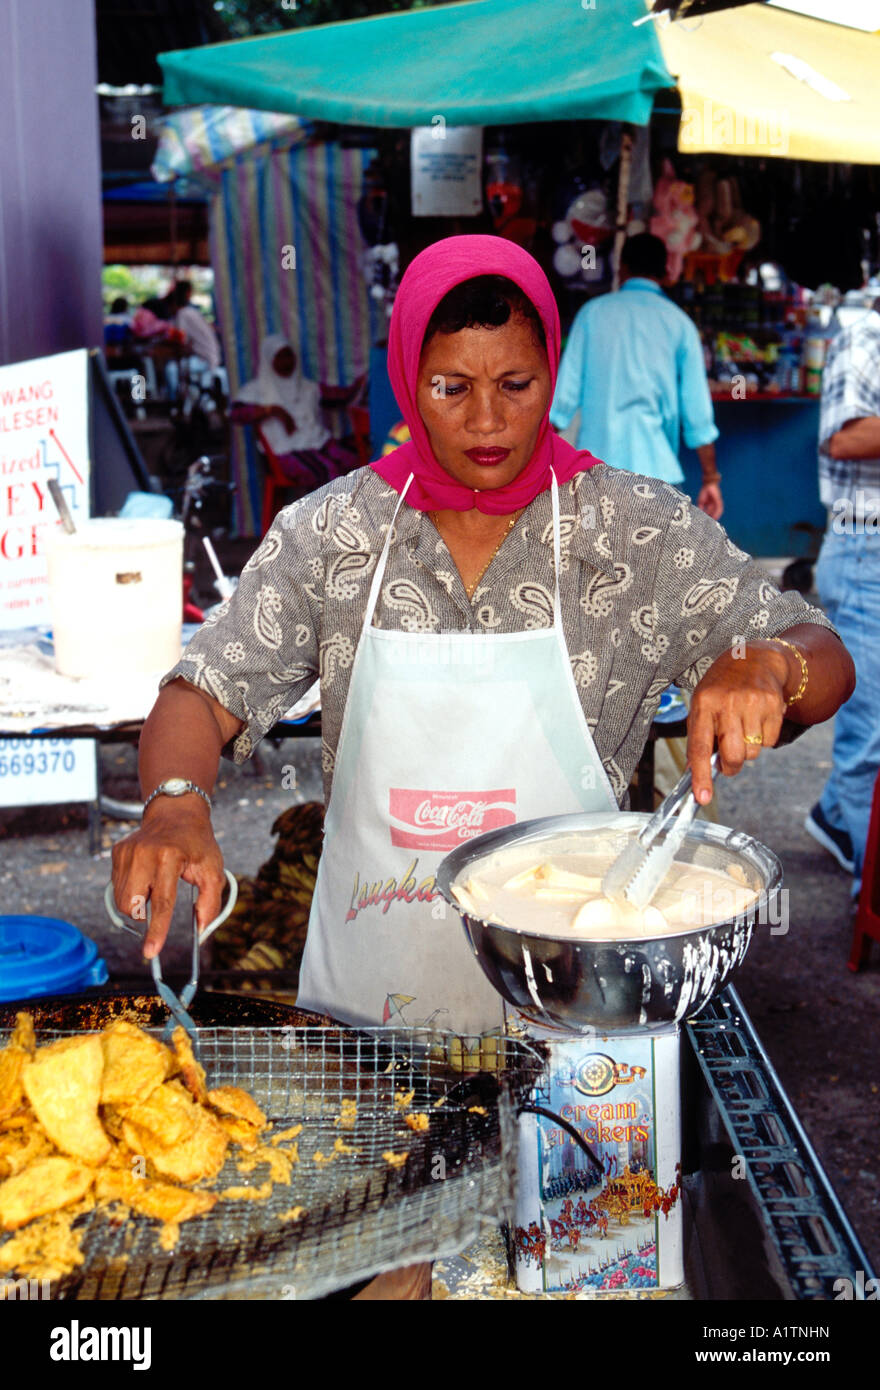 Malaisie malais personnes femme adulte femme Île de Langkawi Kuah de vendeurs d'aliments sur l'état de Kedah Malaisie Asie Banque D'Images